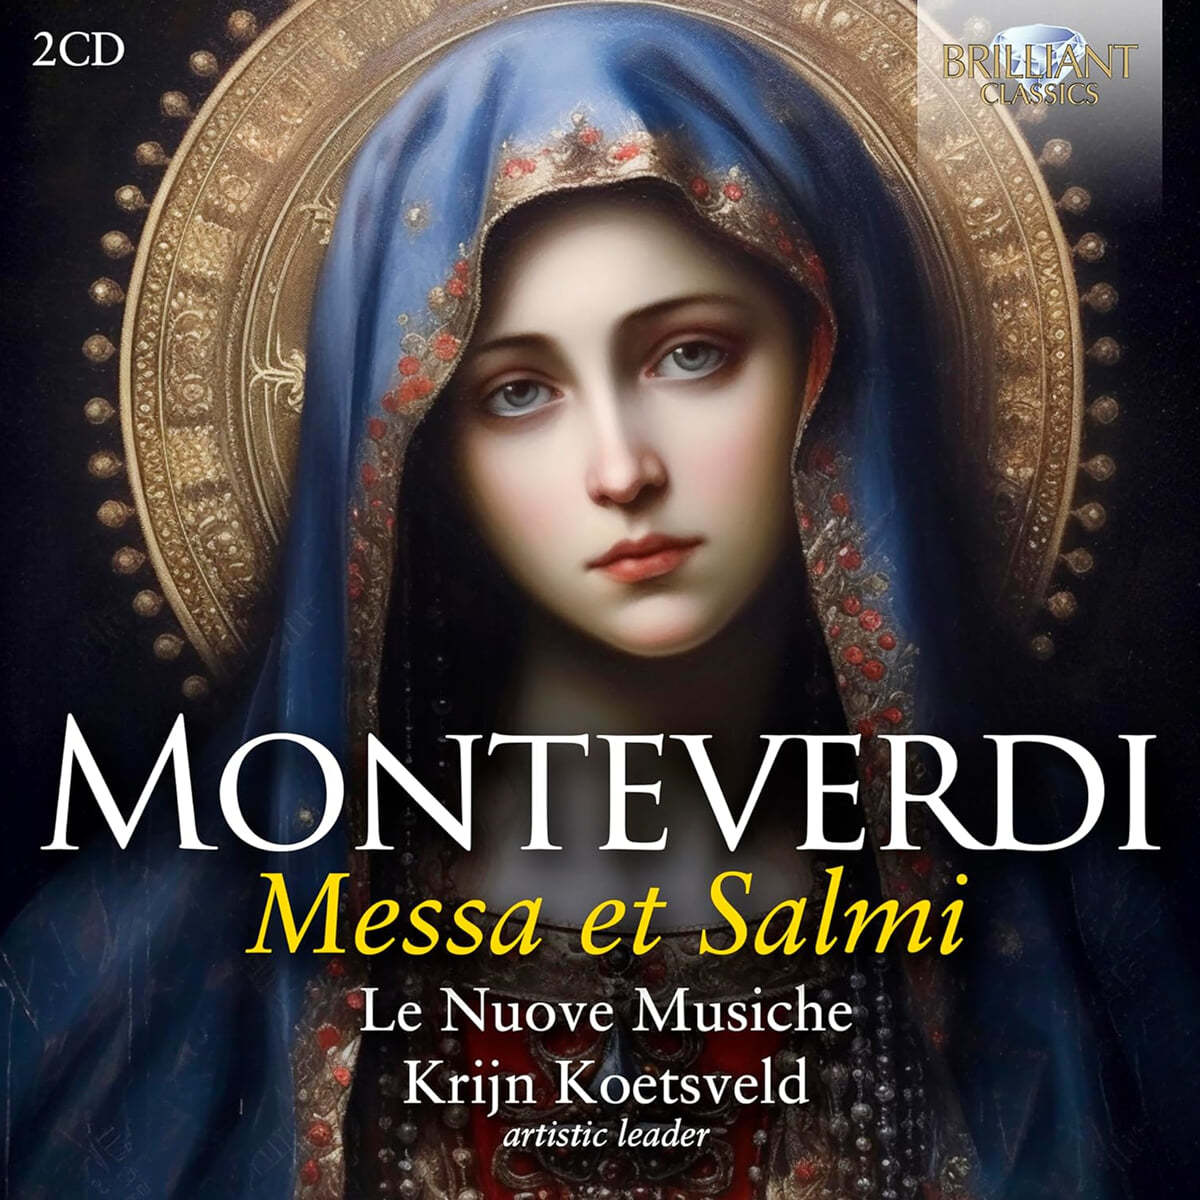 Le Nuove Musiche 몬테베르디: 미사와 시편 (Monteverdi: Messa Et Salmi)